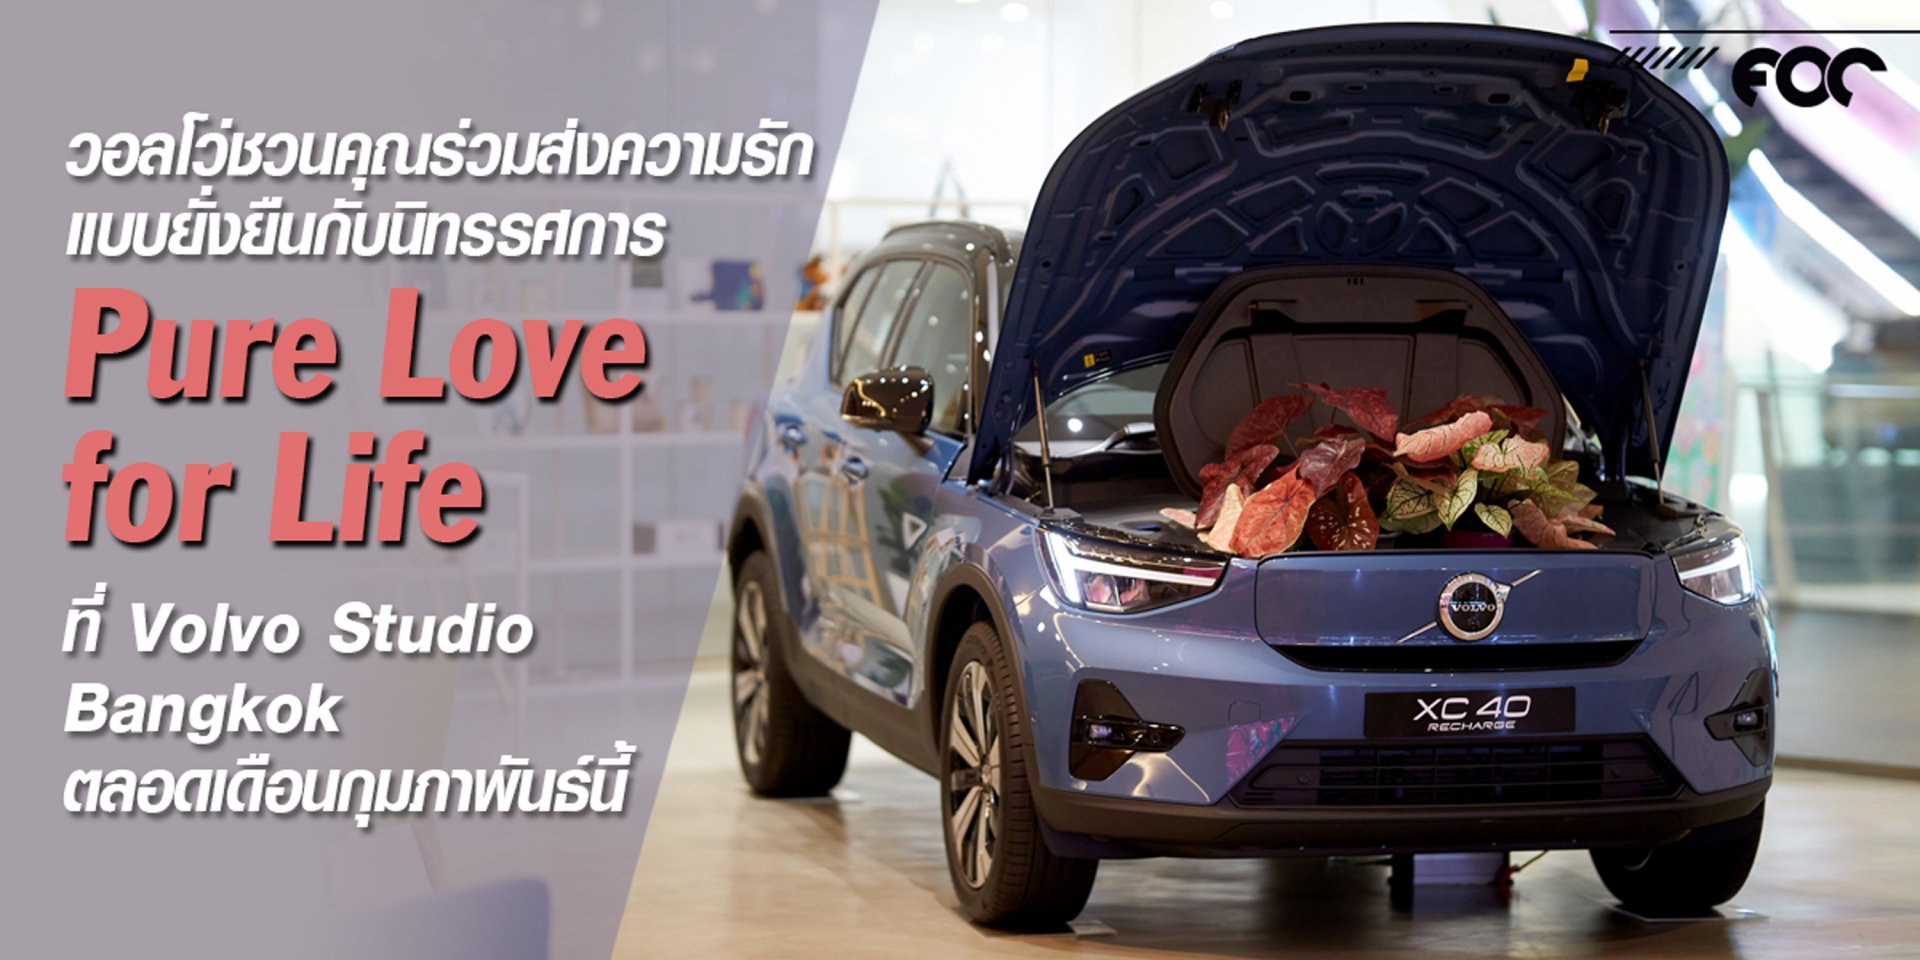 วอลโว่ชวนคุณร่วมส่งความรักแบบยั่งยืนกับนิทรรศการ Pure Love for Life ที่ Volvo Studio Bangkok ตลอดเดือนกุมภาพันธ์นี้ 